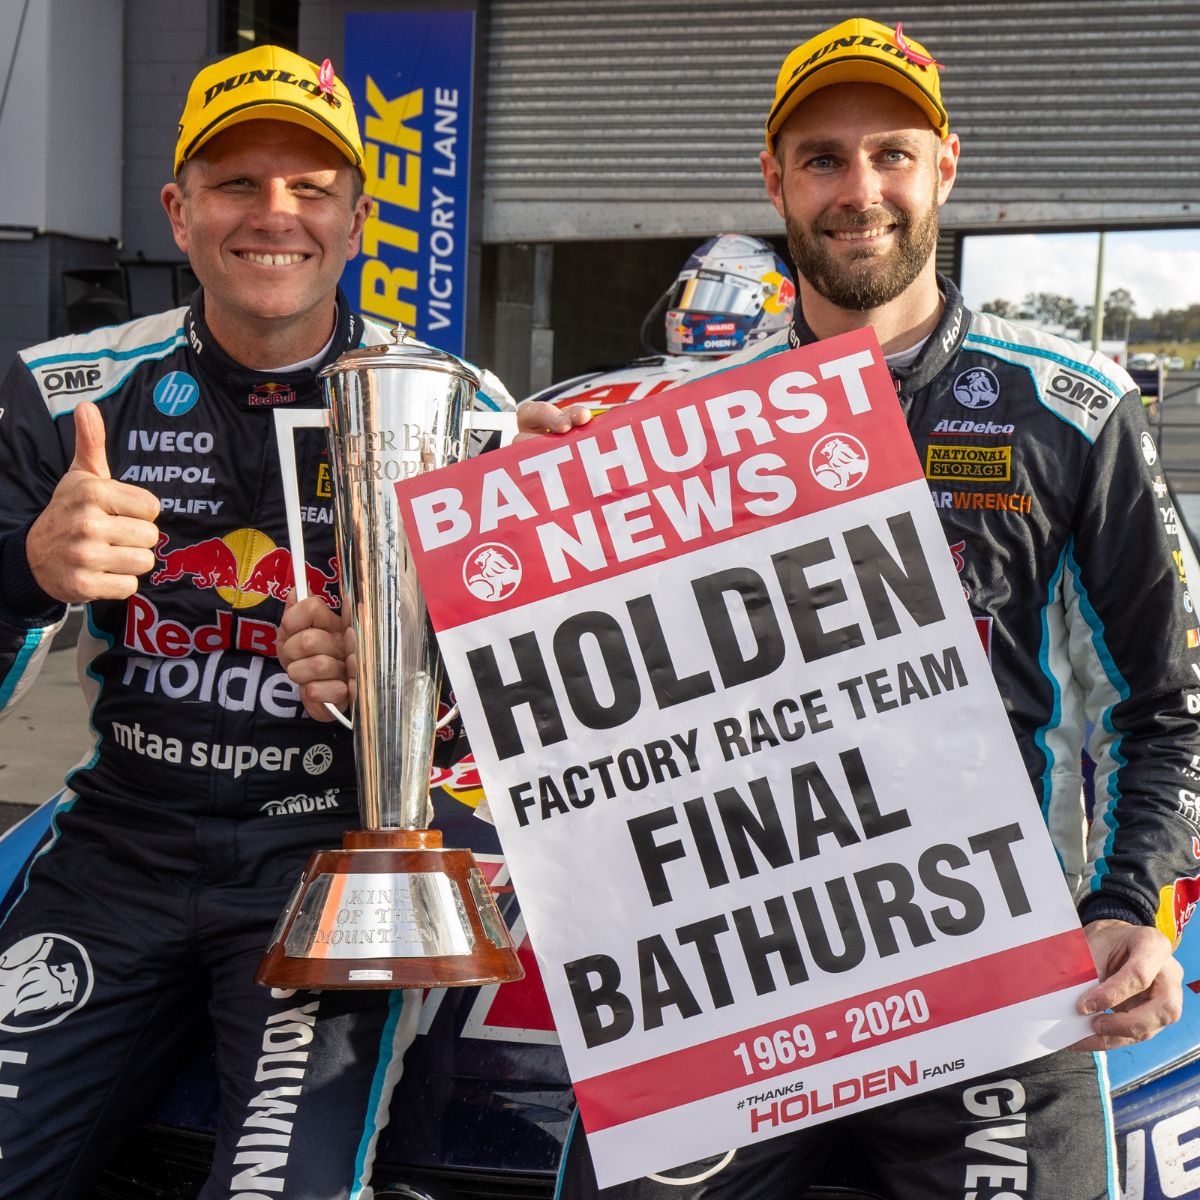 Holden ZB Commodore Red Bull Holden Racing Team - #97 van Gisbergen/ Tander - 2020 Bathurst 1000 Winner "Thanks Holden Fans"